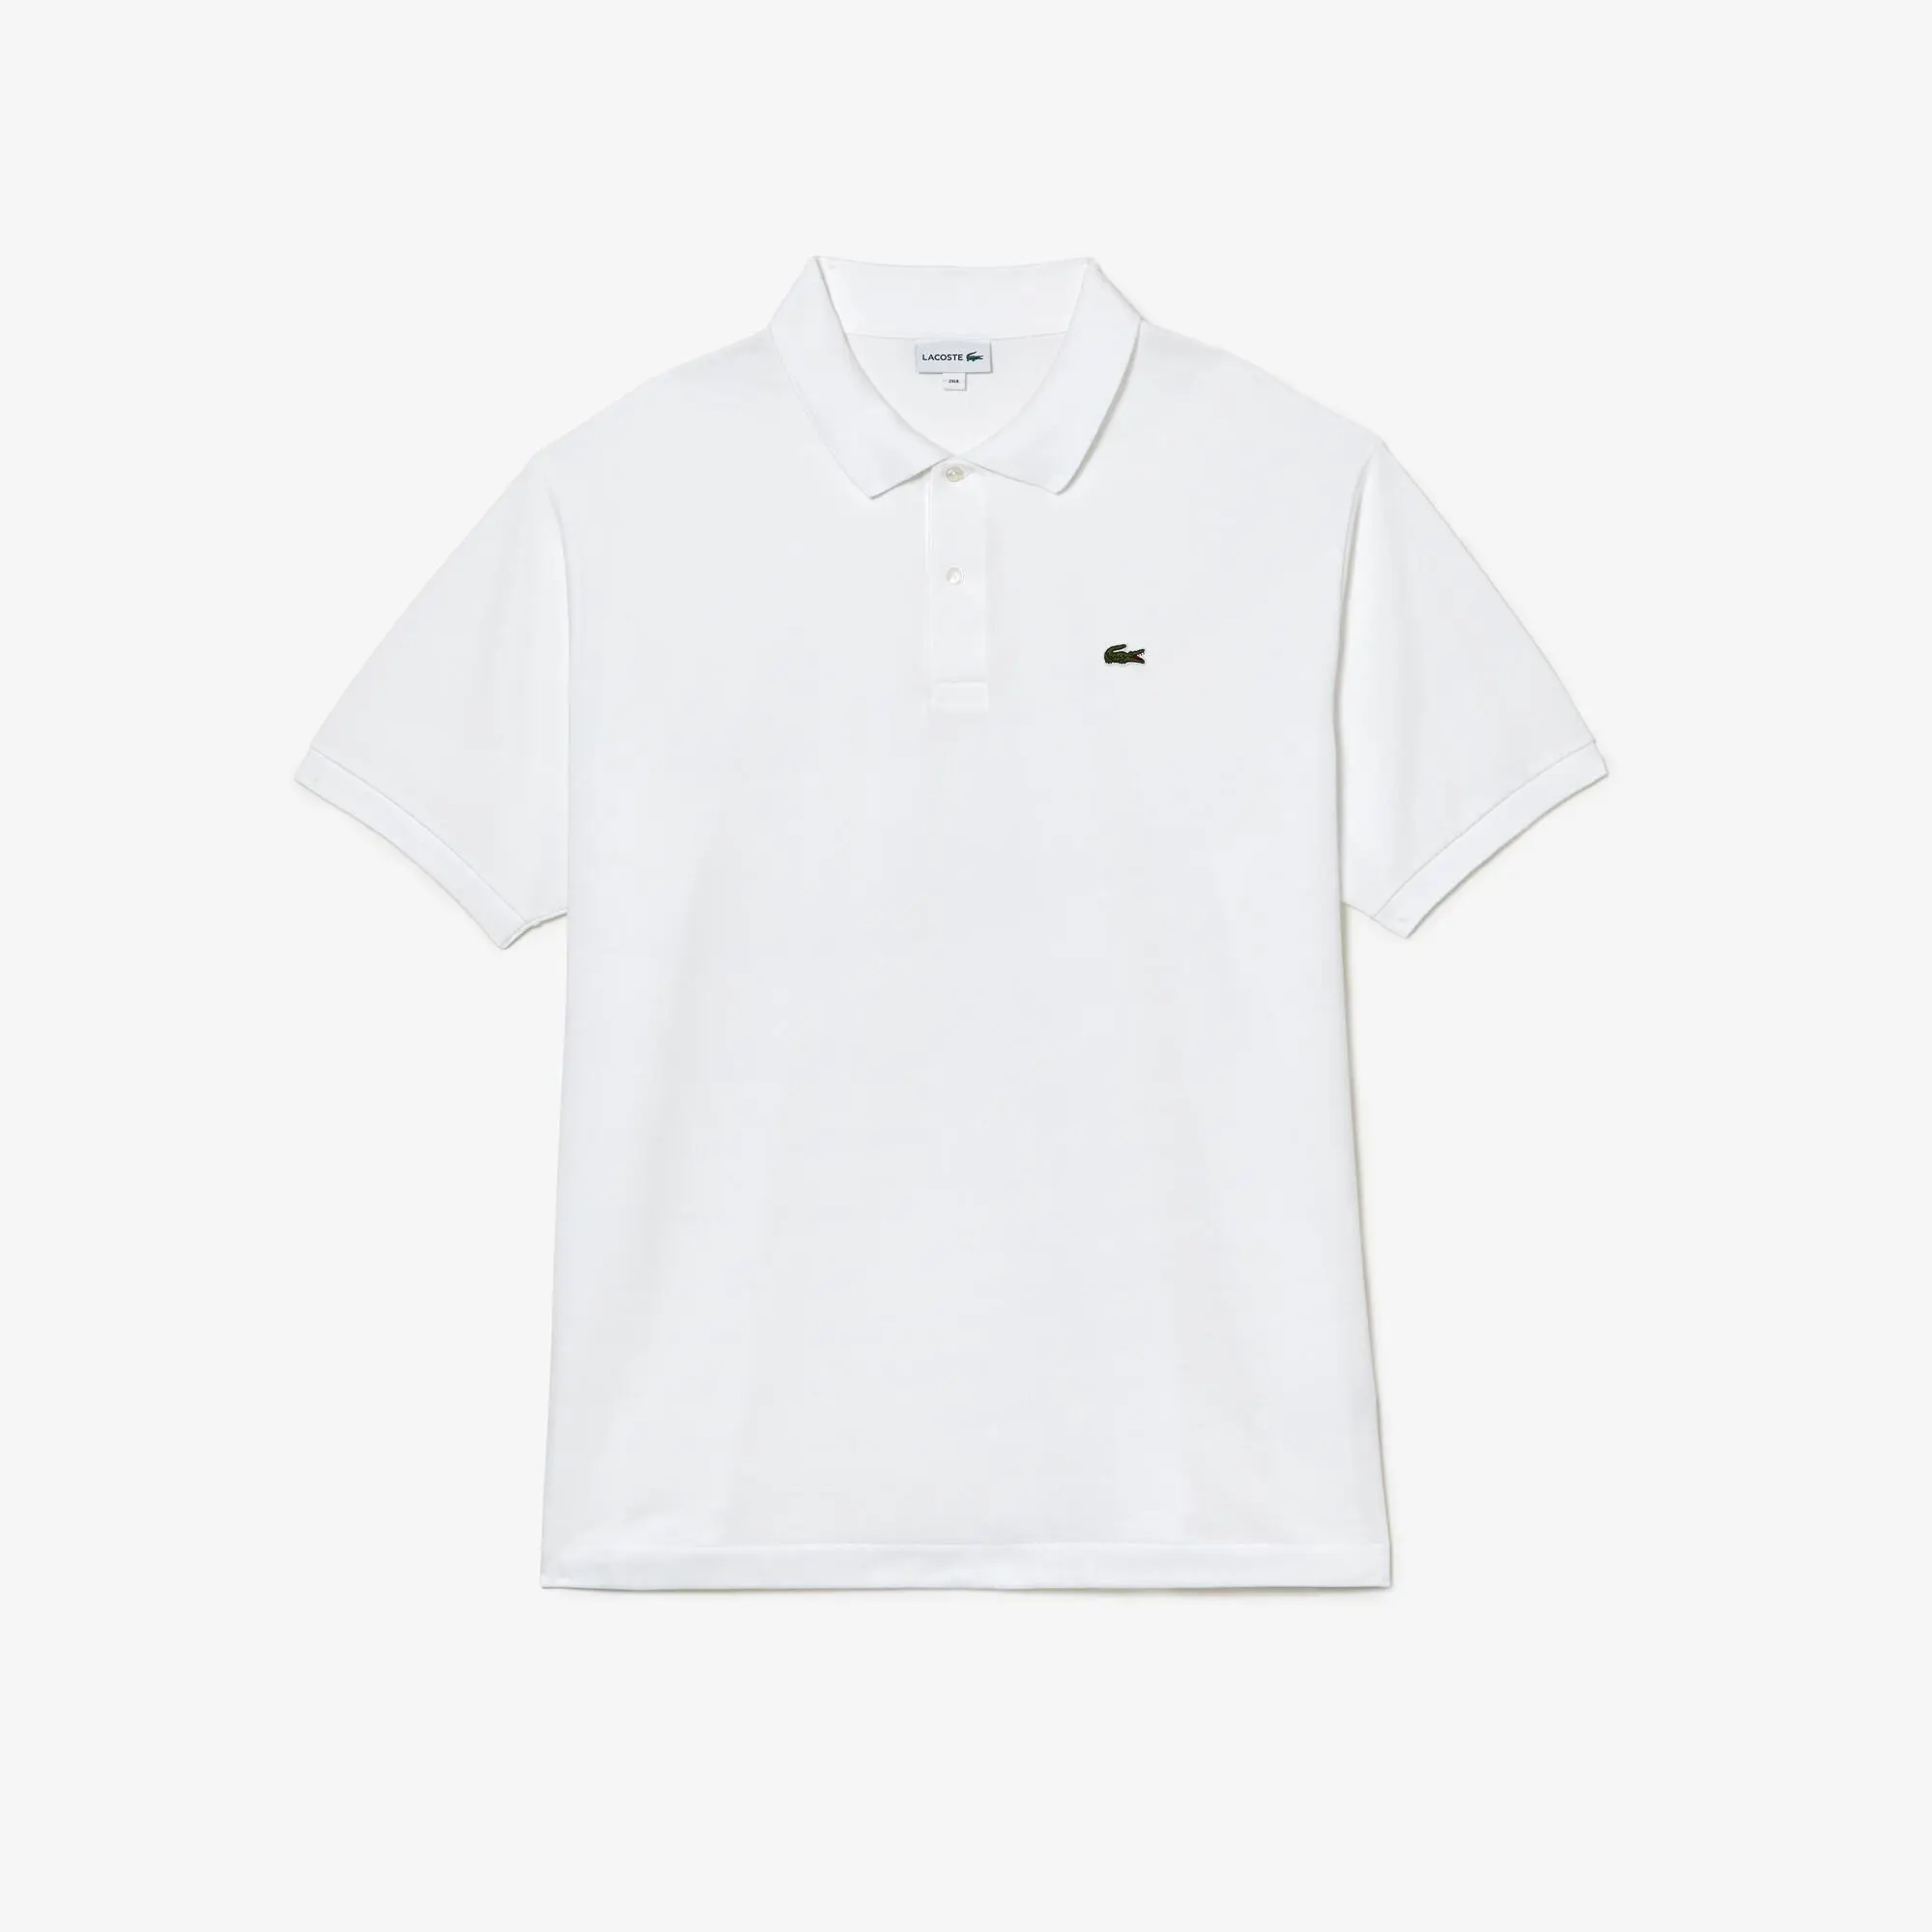 Lacoste Men’s Lacoste Cotton Petit Piqué Polo Shirt - Plus Size - Big. 2